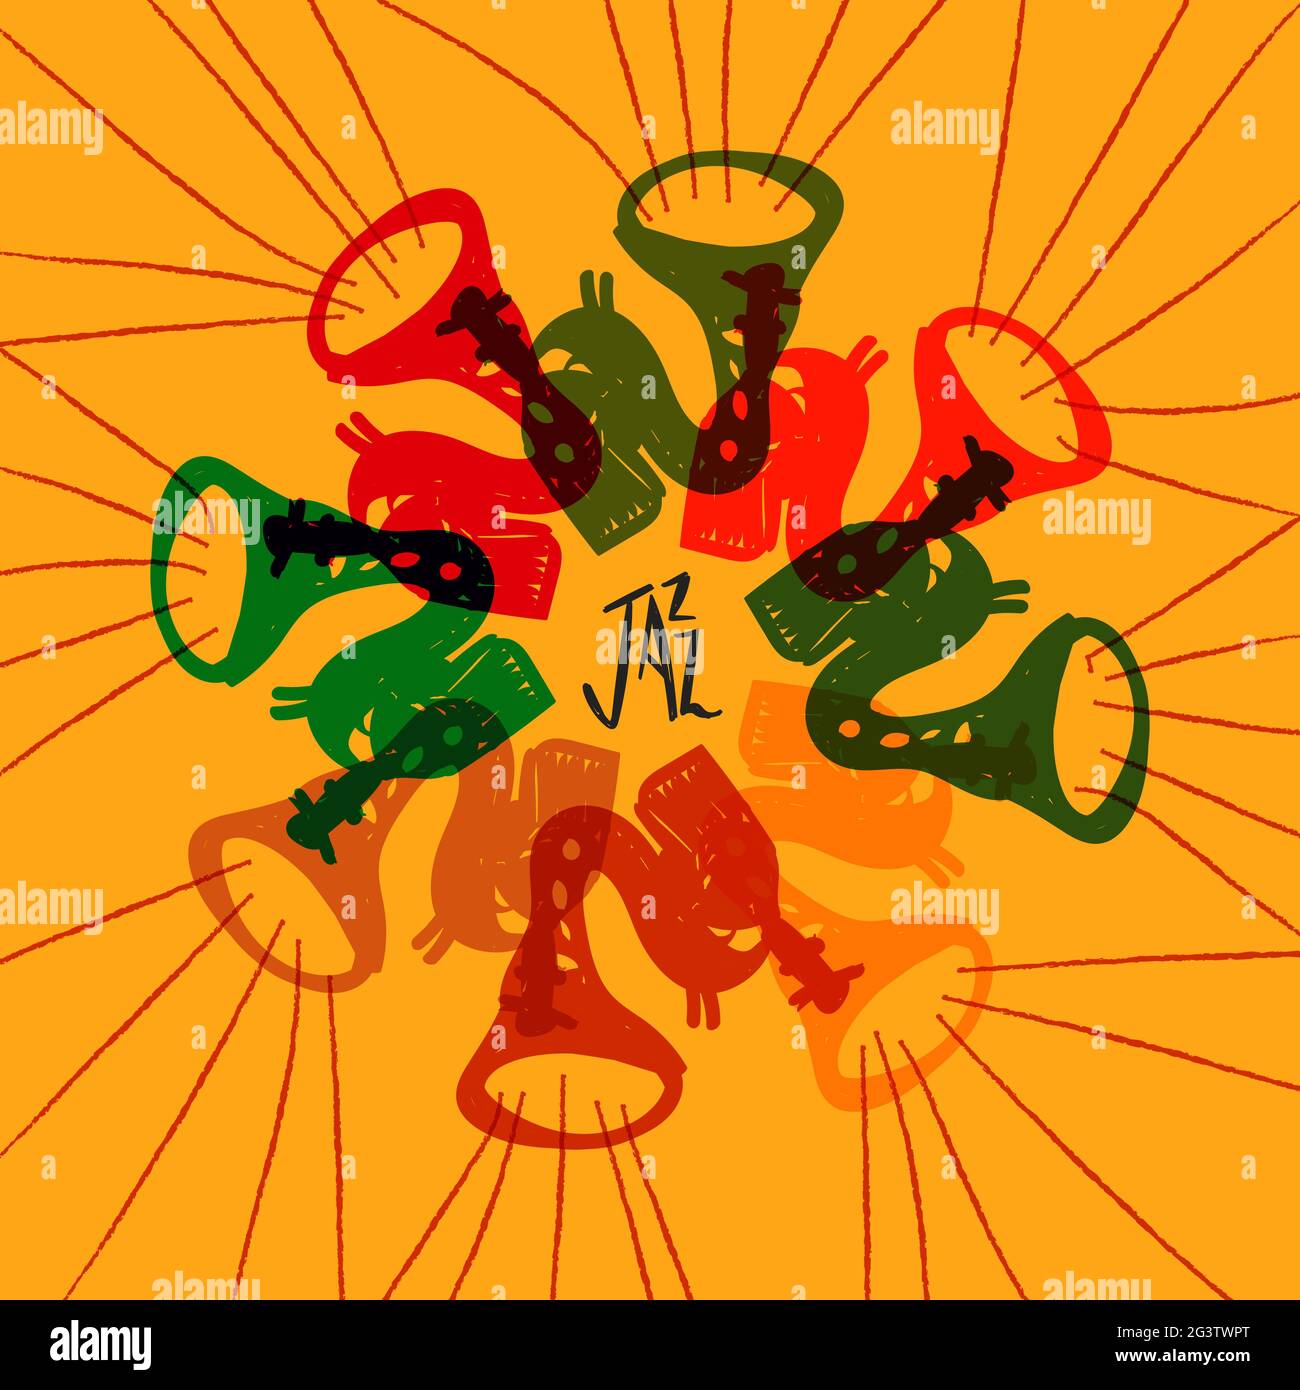 Vorlage zur Illustration des Jazz Festival-Posters. Bunte Saxophon Musikinstrument Doodle Cartoon für Live-Konzert-Event oder musikalische Party-Konzept. Stock Vektor